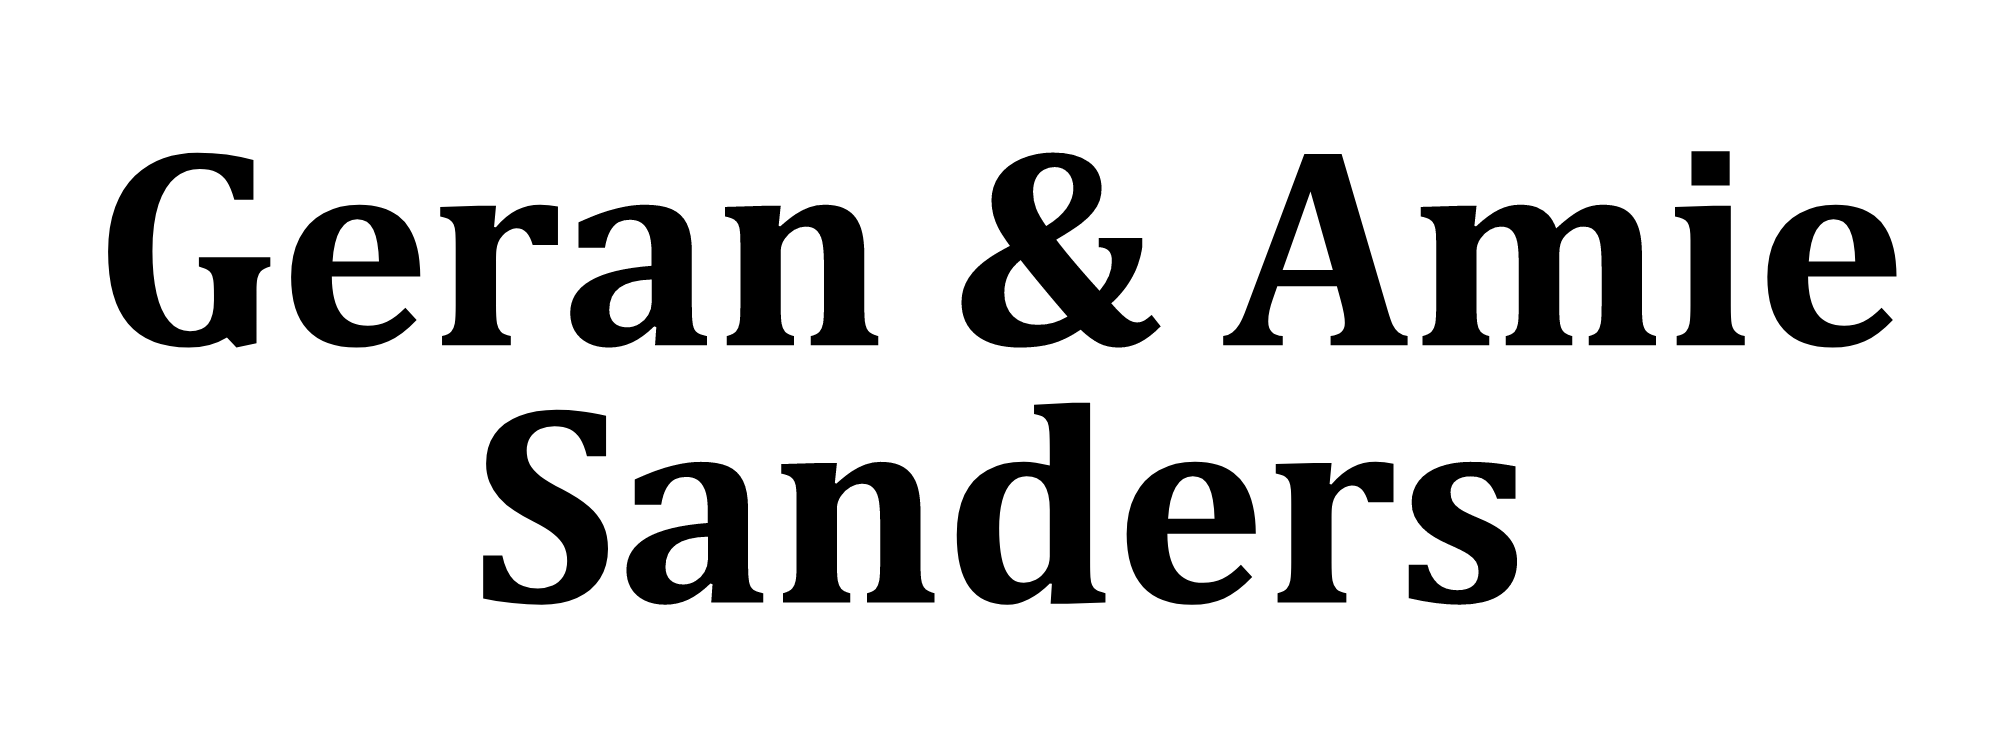 Geran and Amie Sanders logo.png